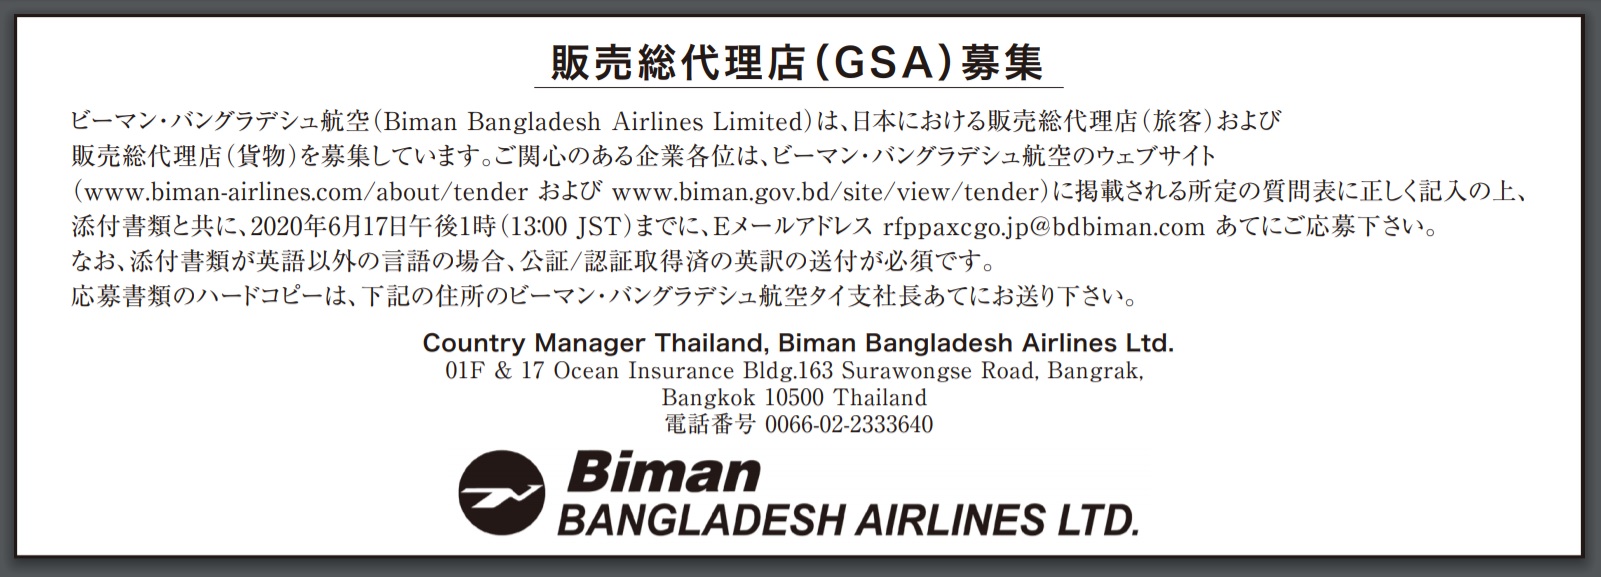 ビマン・バングラデシュ航空が日本での販売総代理店の募集を開始